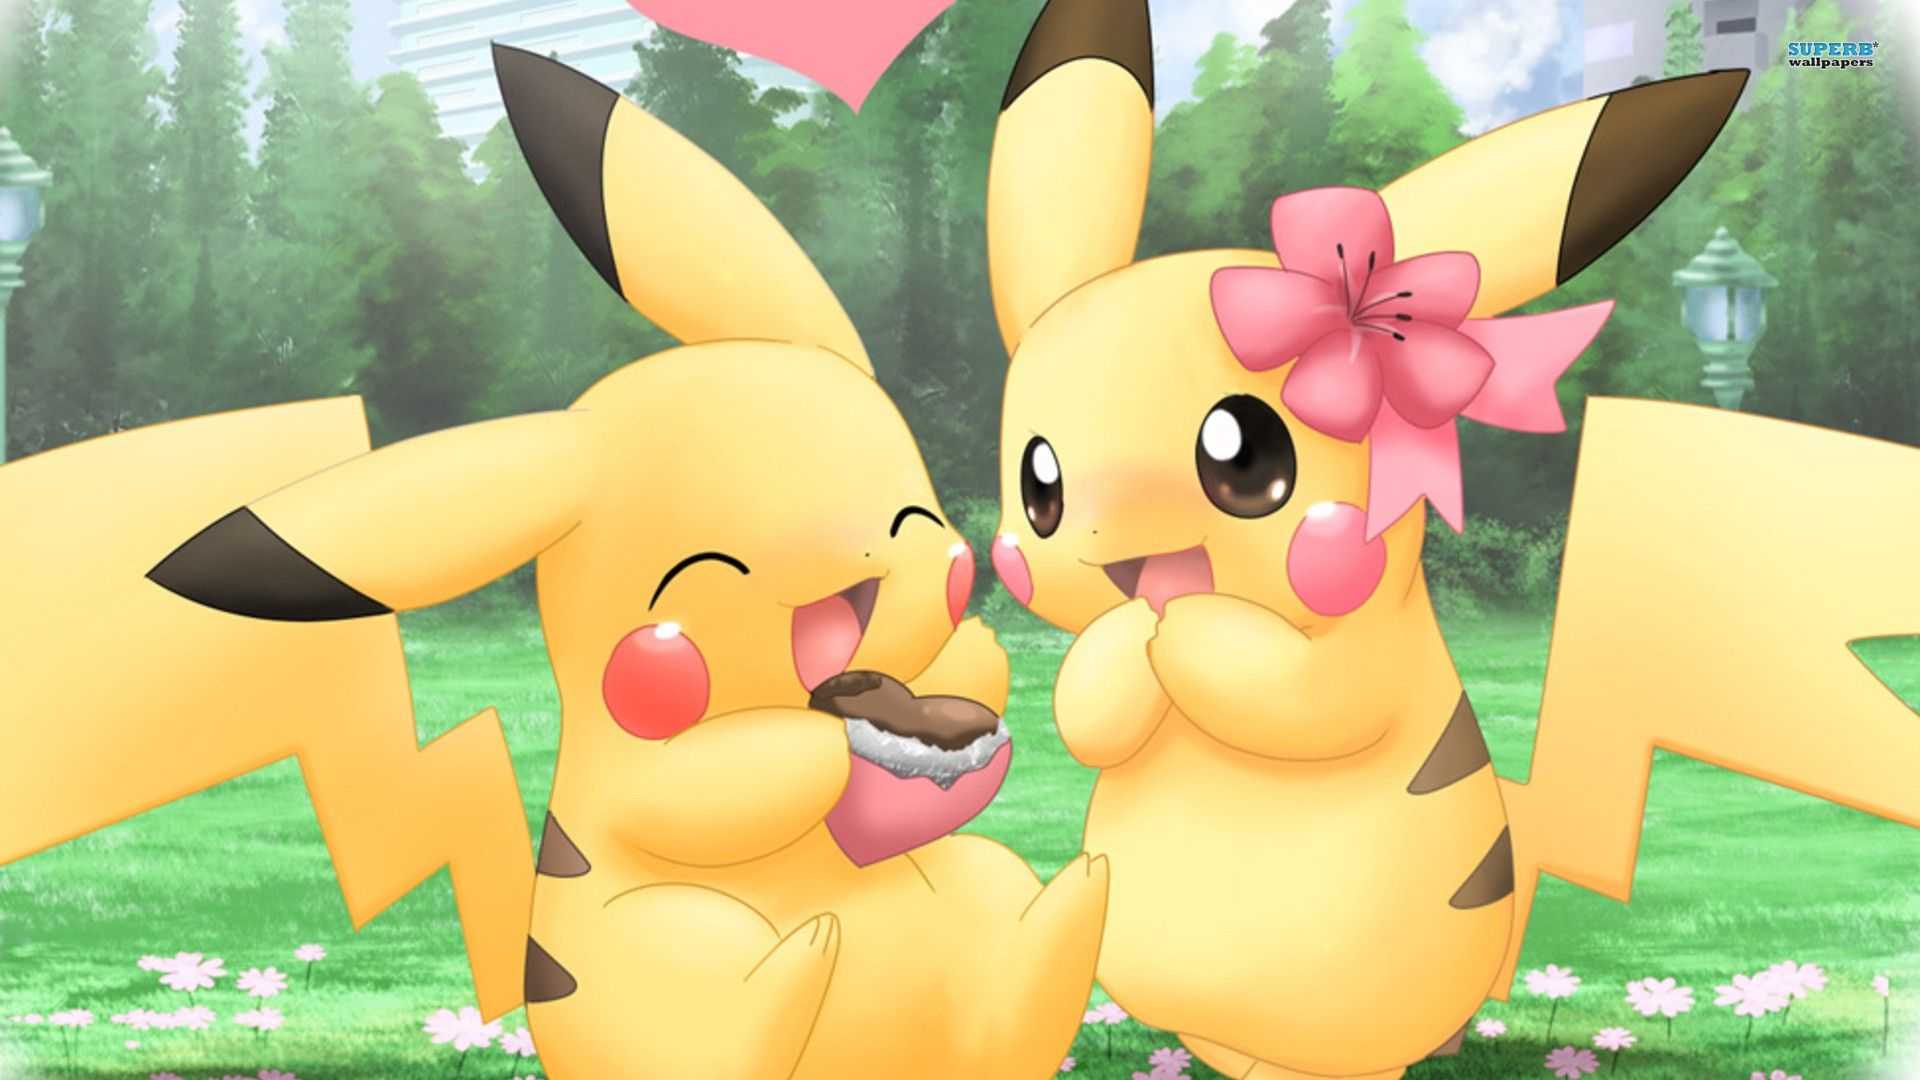 Pikachu boy and girl chocolate heart. Pikachu wallpaper, Cute pikachu, Cute pokemon wallpaper